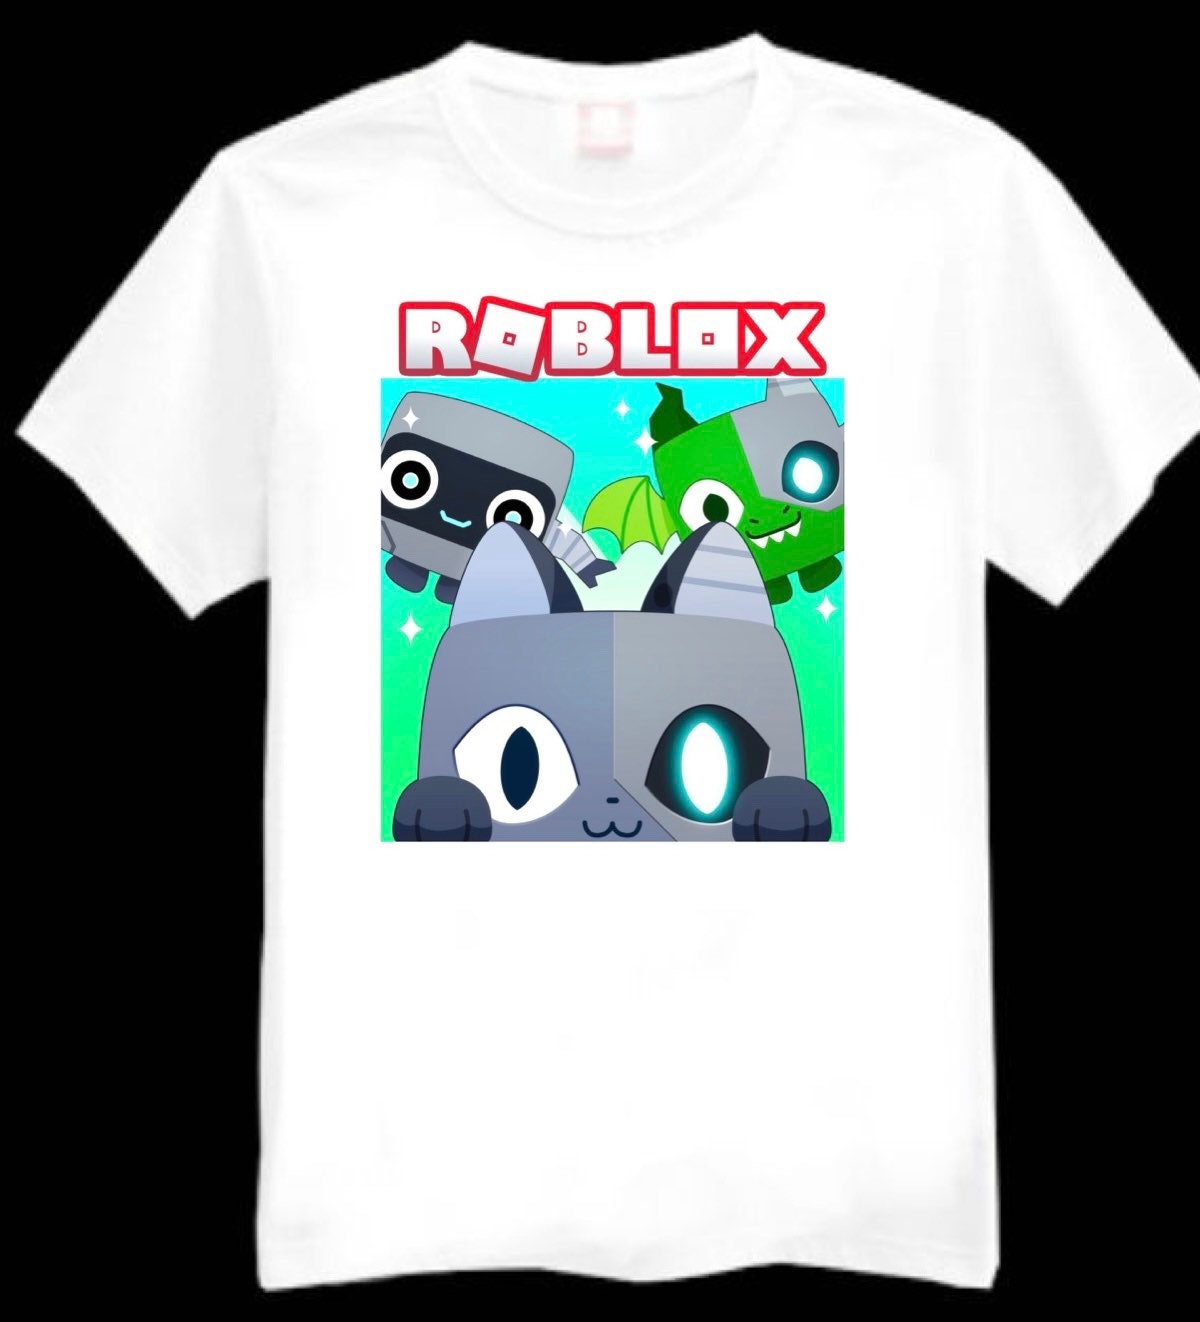 roblox t-shirt in 2022, Roblox t-shirt, Roblox t shirts, Cute cartoon  wallpapers